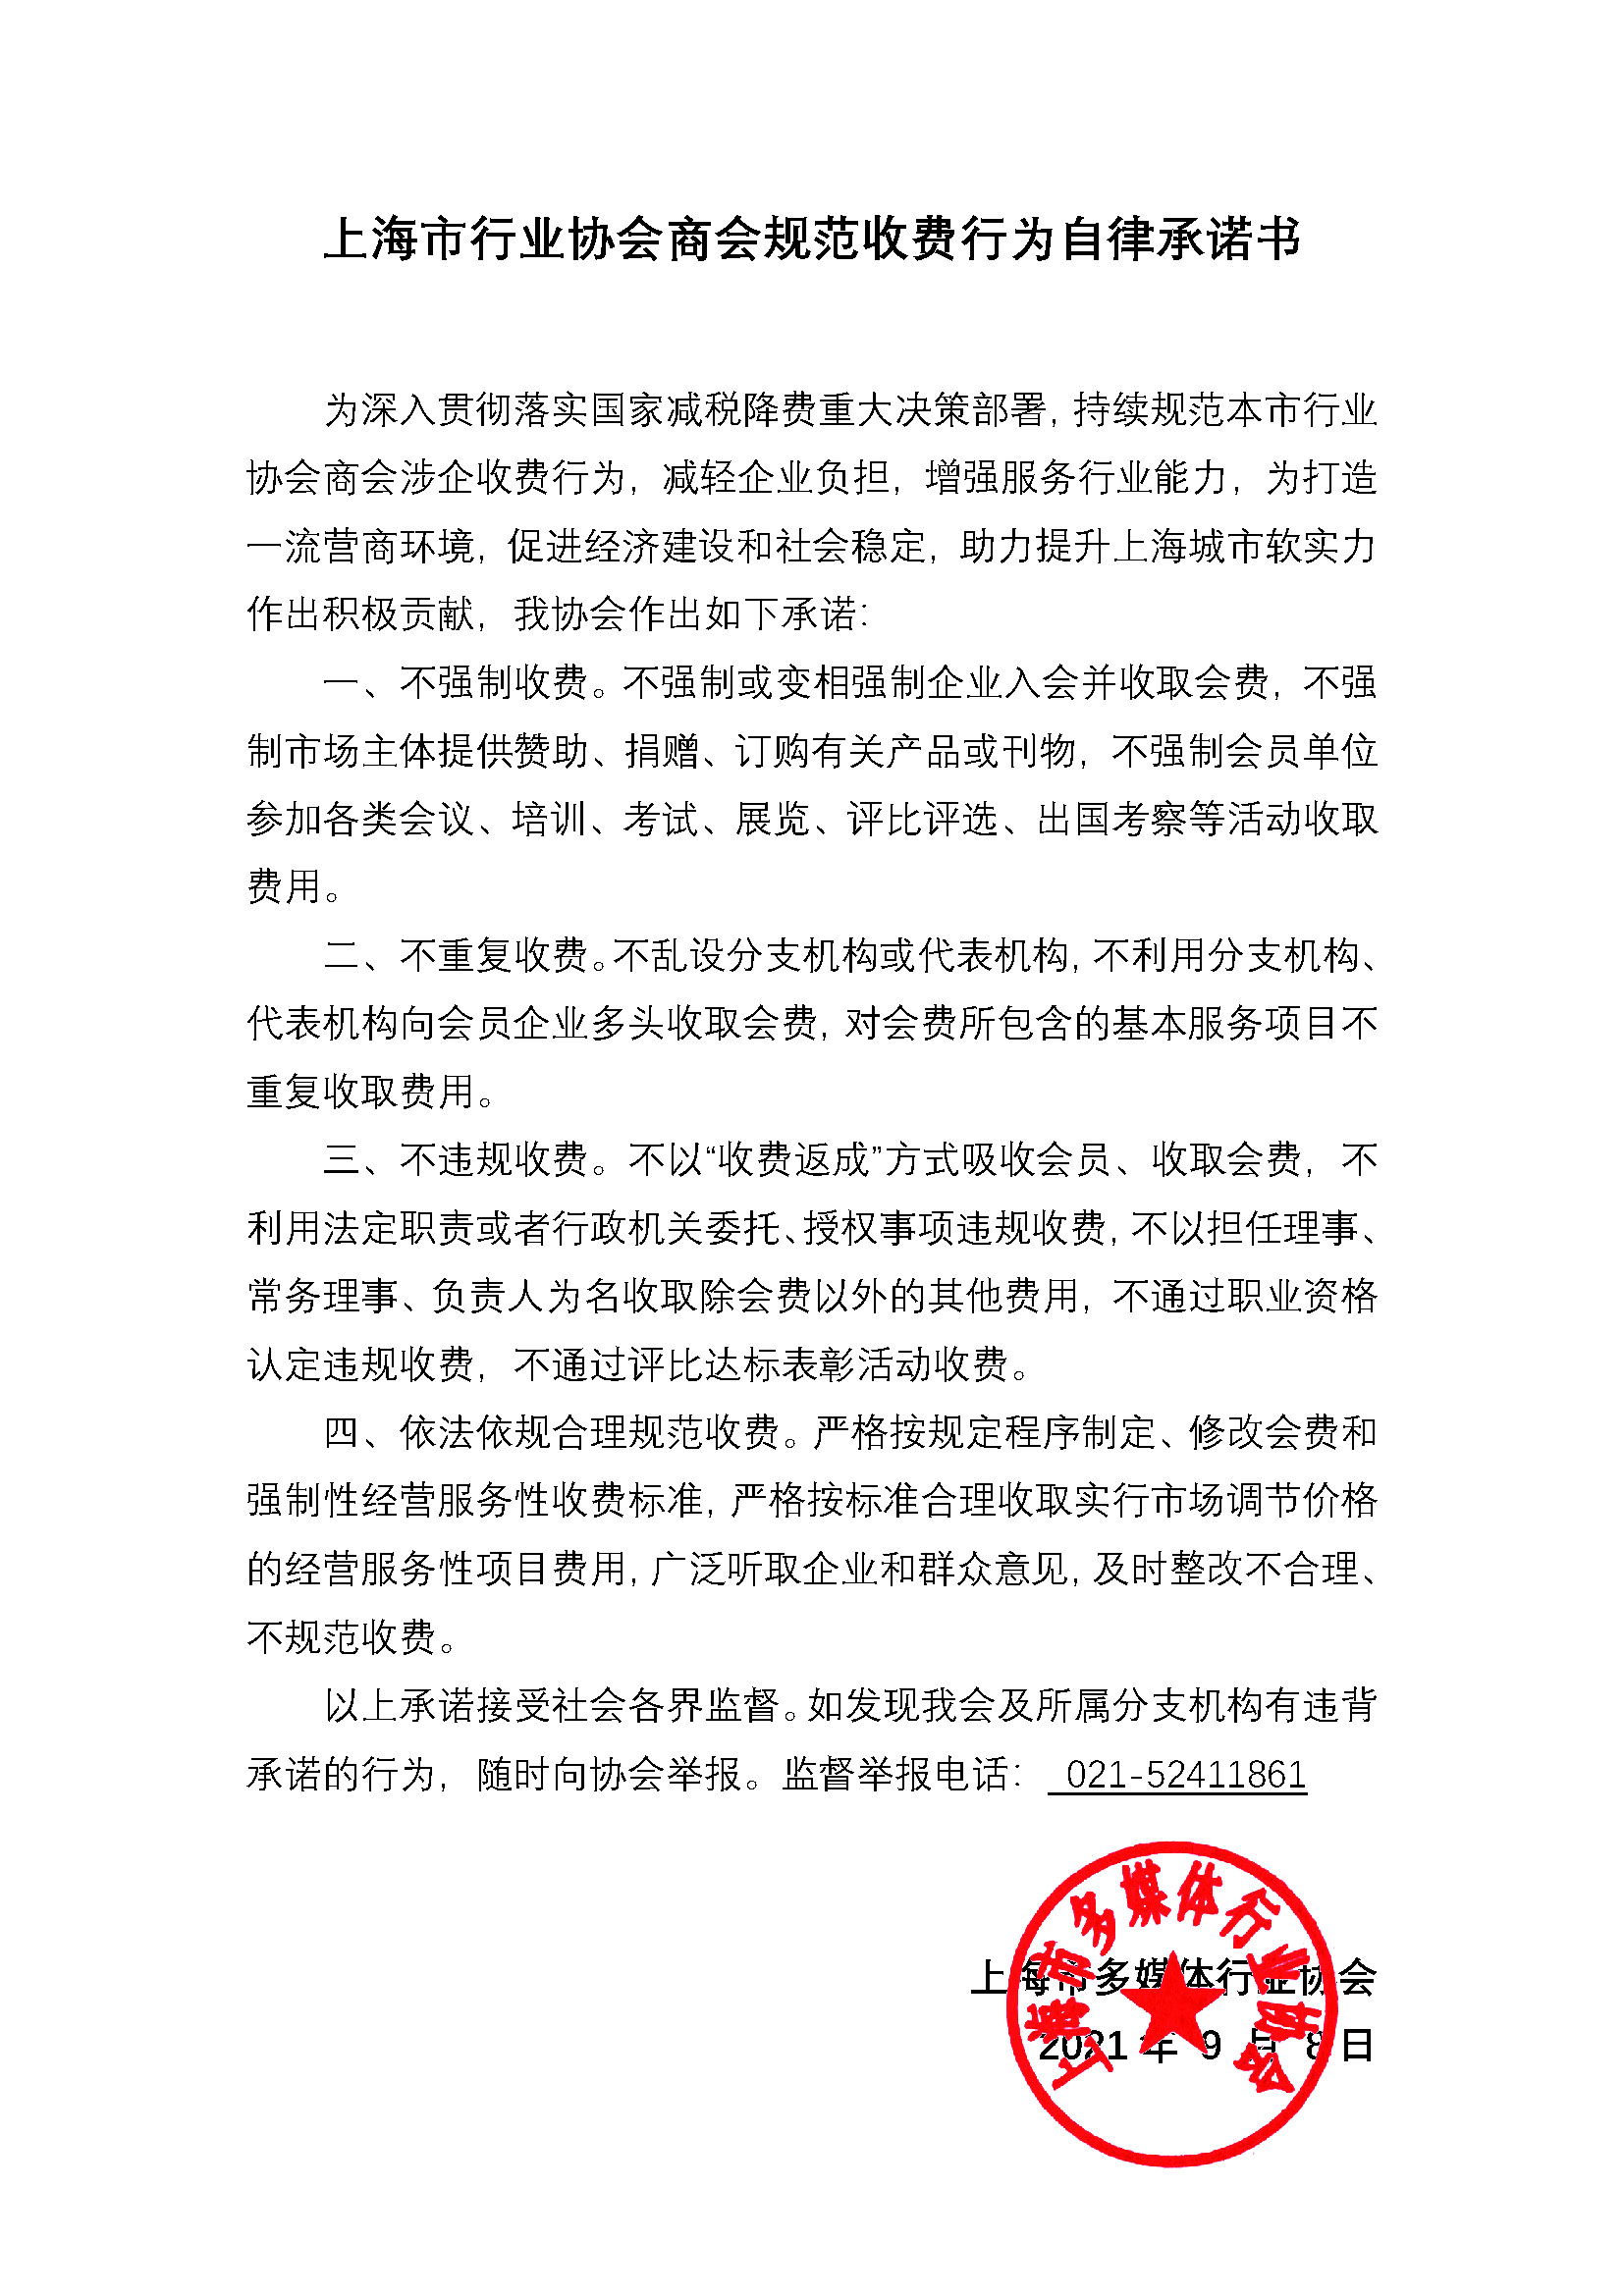 上海市行业协会商会规范收费行为自律承诺书-多媒体行业协会.jpg